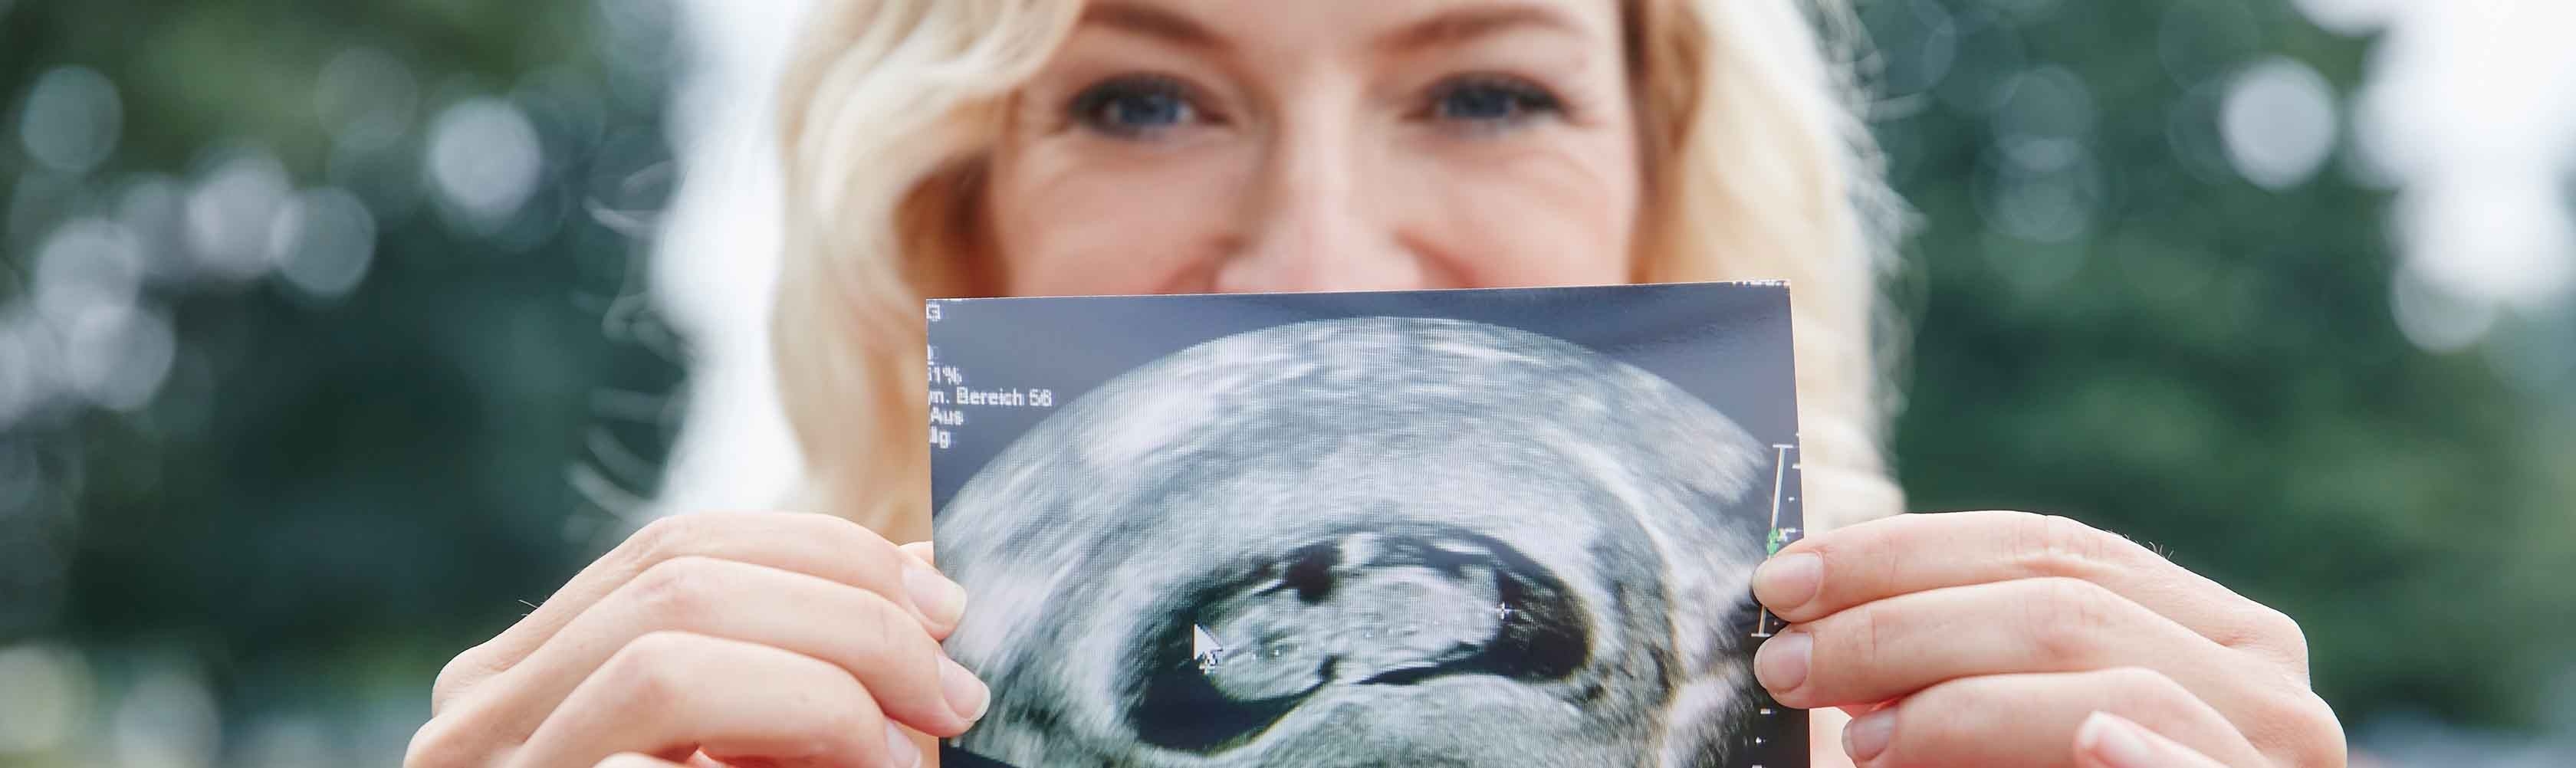 Schwangerschaft – Frau zeigt Ultraschallbild in die Kamera